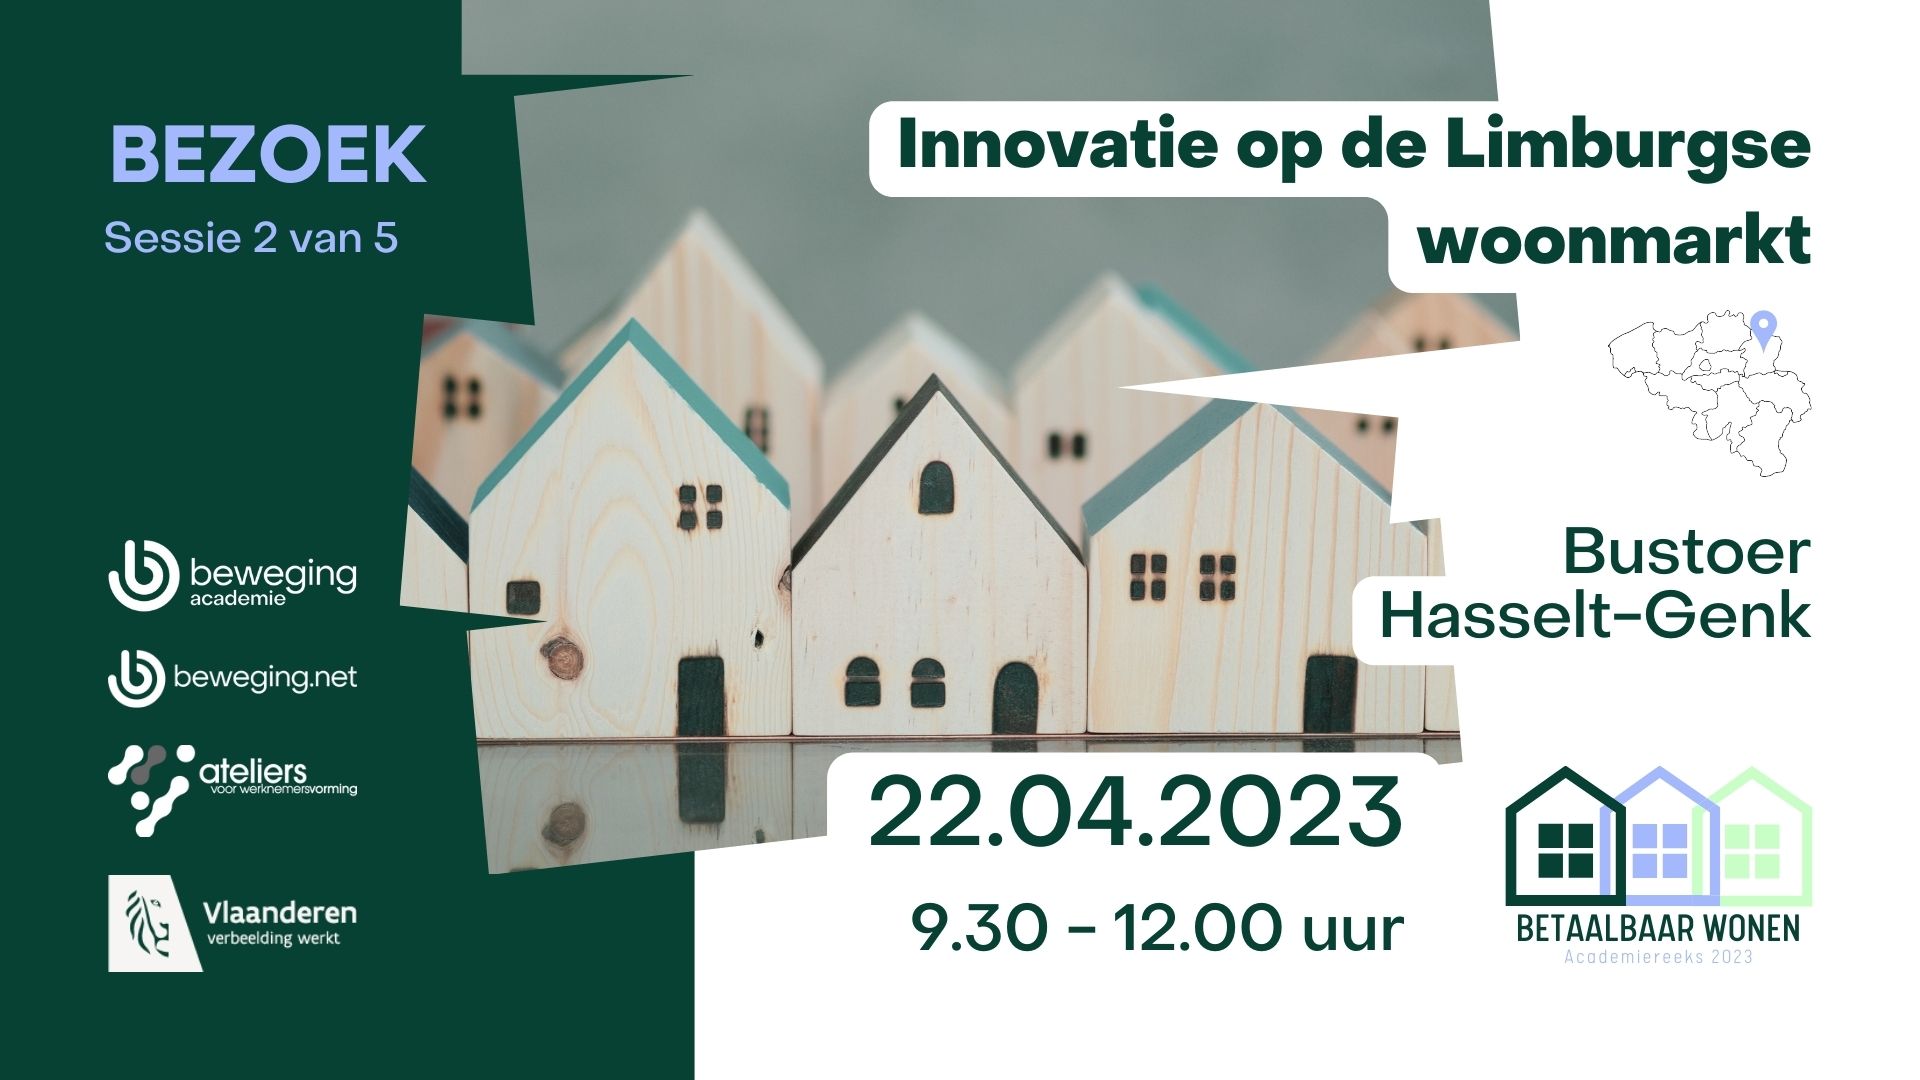 Praktijkbezoek innovatie op de Limburgse woonmarkt